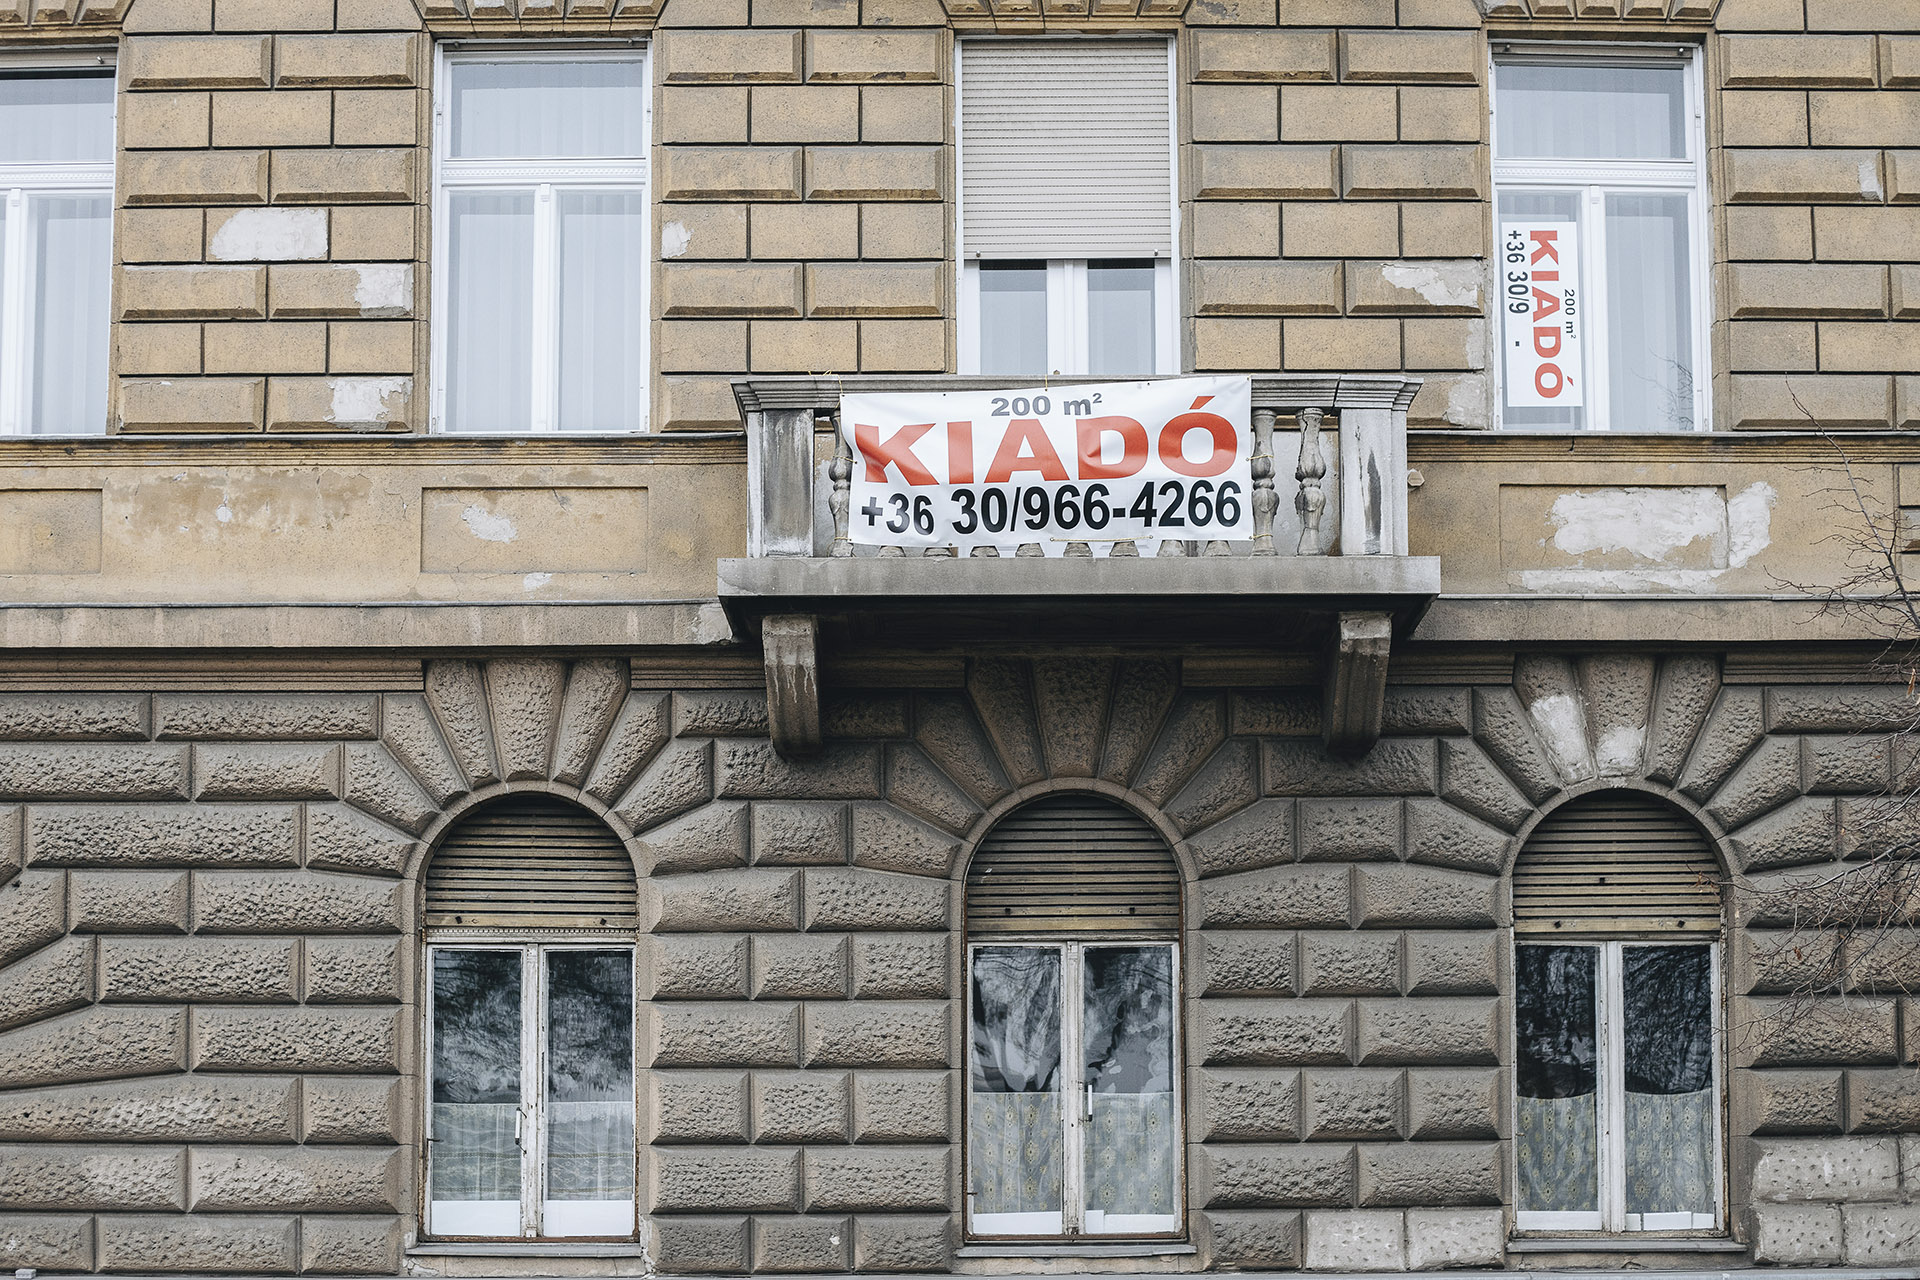 Egyre több magyar gondolja úgy, hogy esélye sincs saját lakáshoz jutni